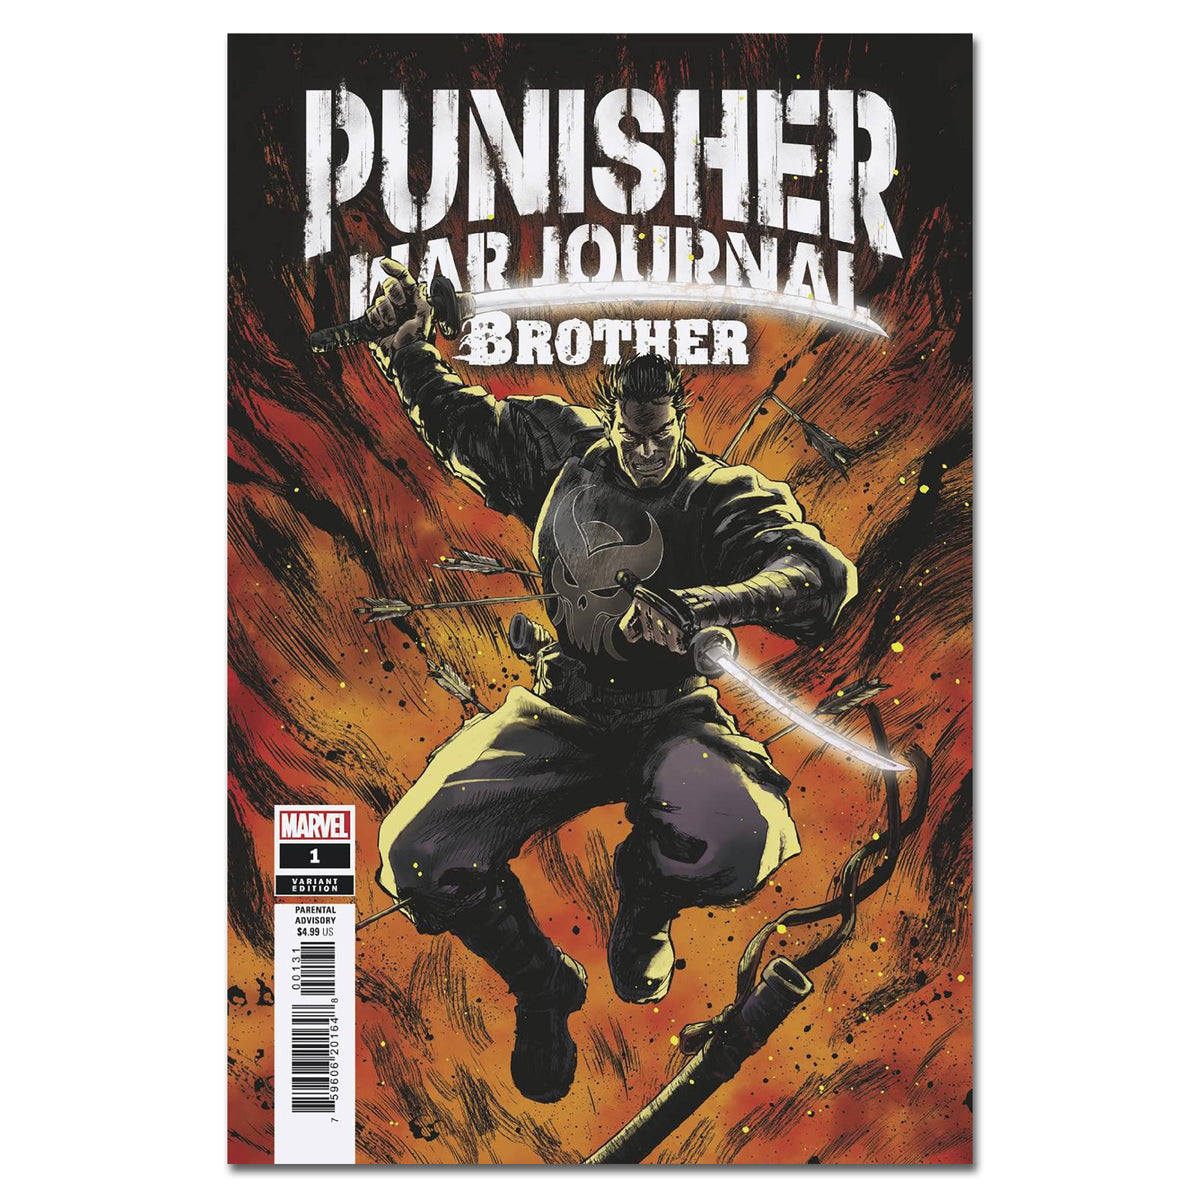 Punisher War Journal Brother #1 Cover Variant SUPERLOG FINALSALE